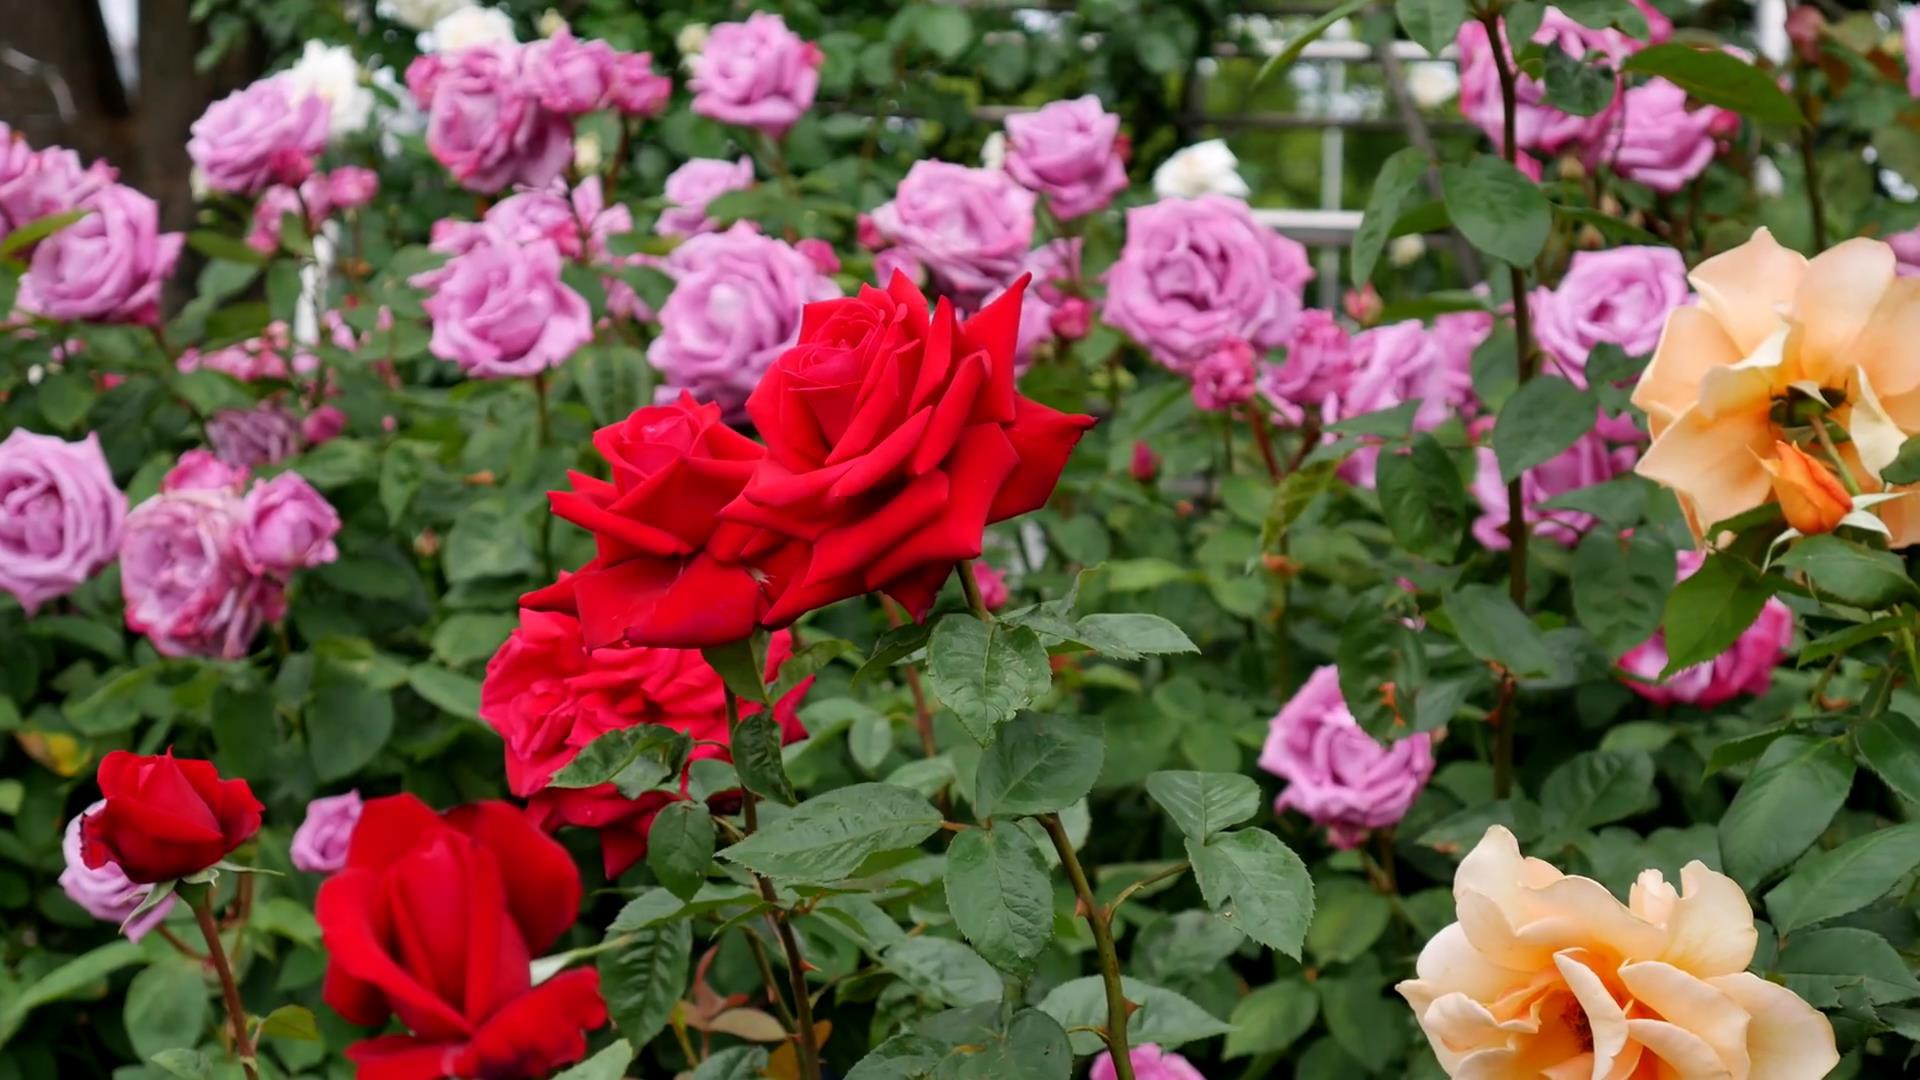 Đến thăm khu vườn trên đảo ở Nhật Bản với 2.600 cây hoa hồng rung rinh trước gió đẹp mê mẩn lòng người - Ảnh 14.